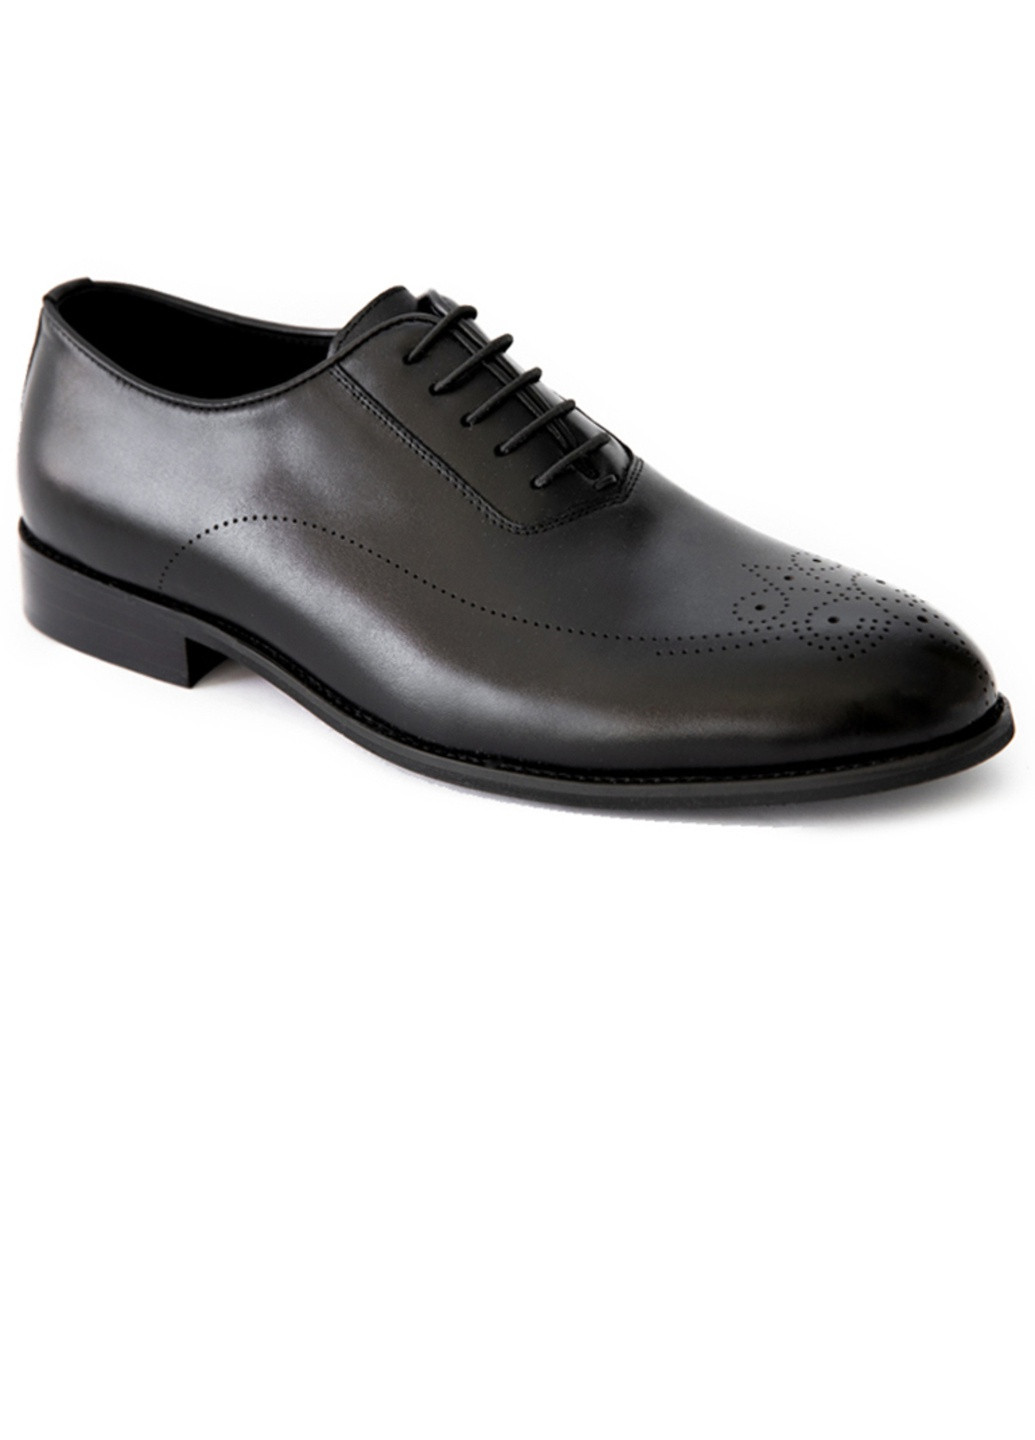 Черные вечерние туфли мужские бренда 9402140_(1) Sergio Billini на шнурках